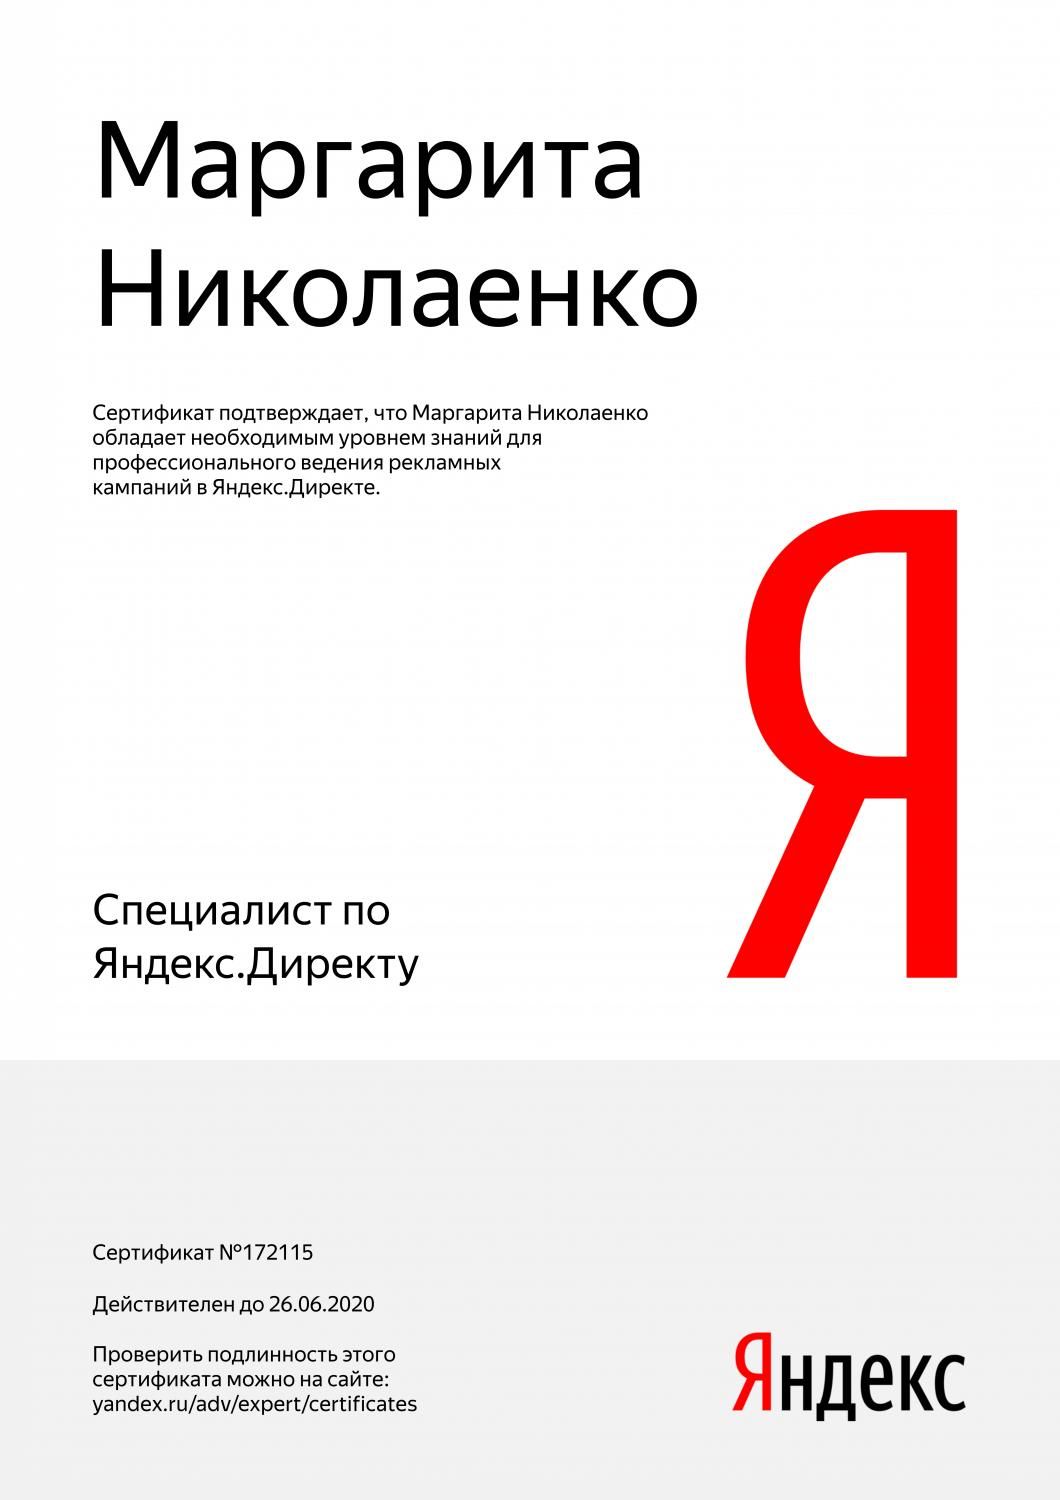 Сертификат специалиста Яндекс. Директ - Николаенко М. в Новороссийска